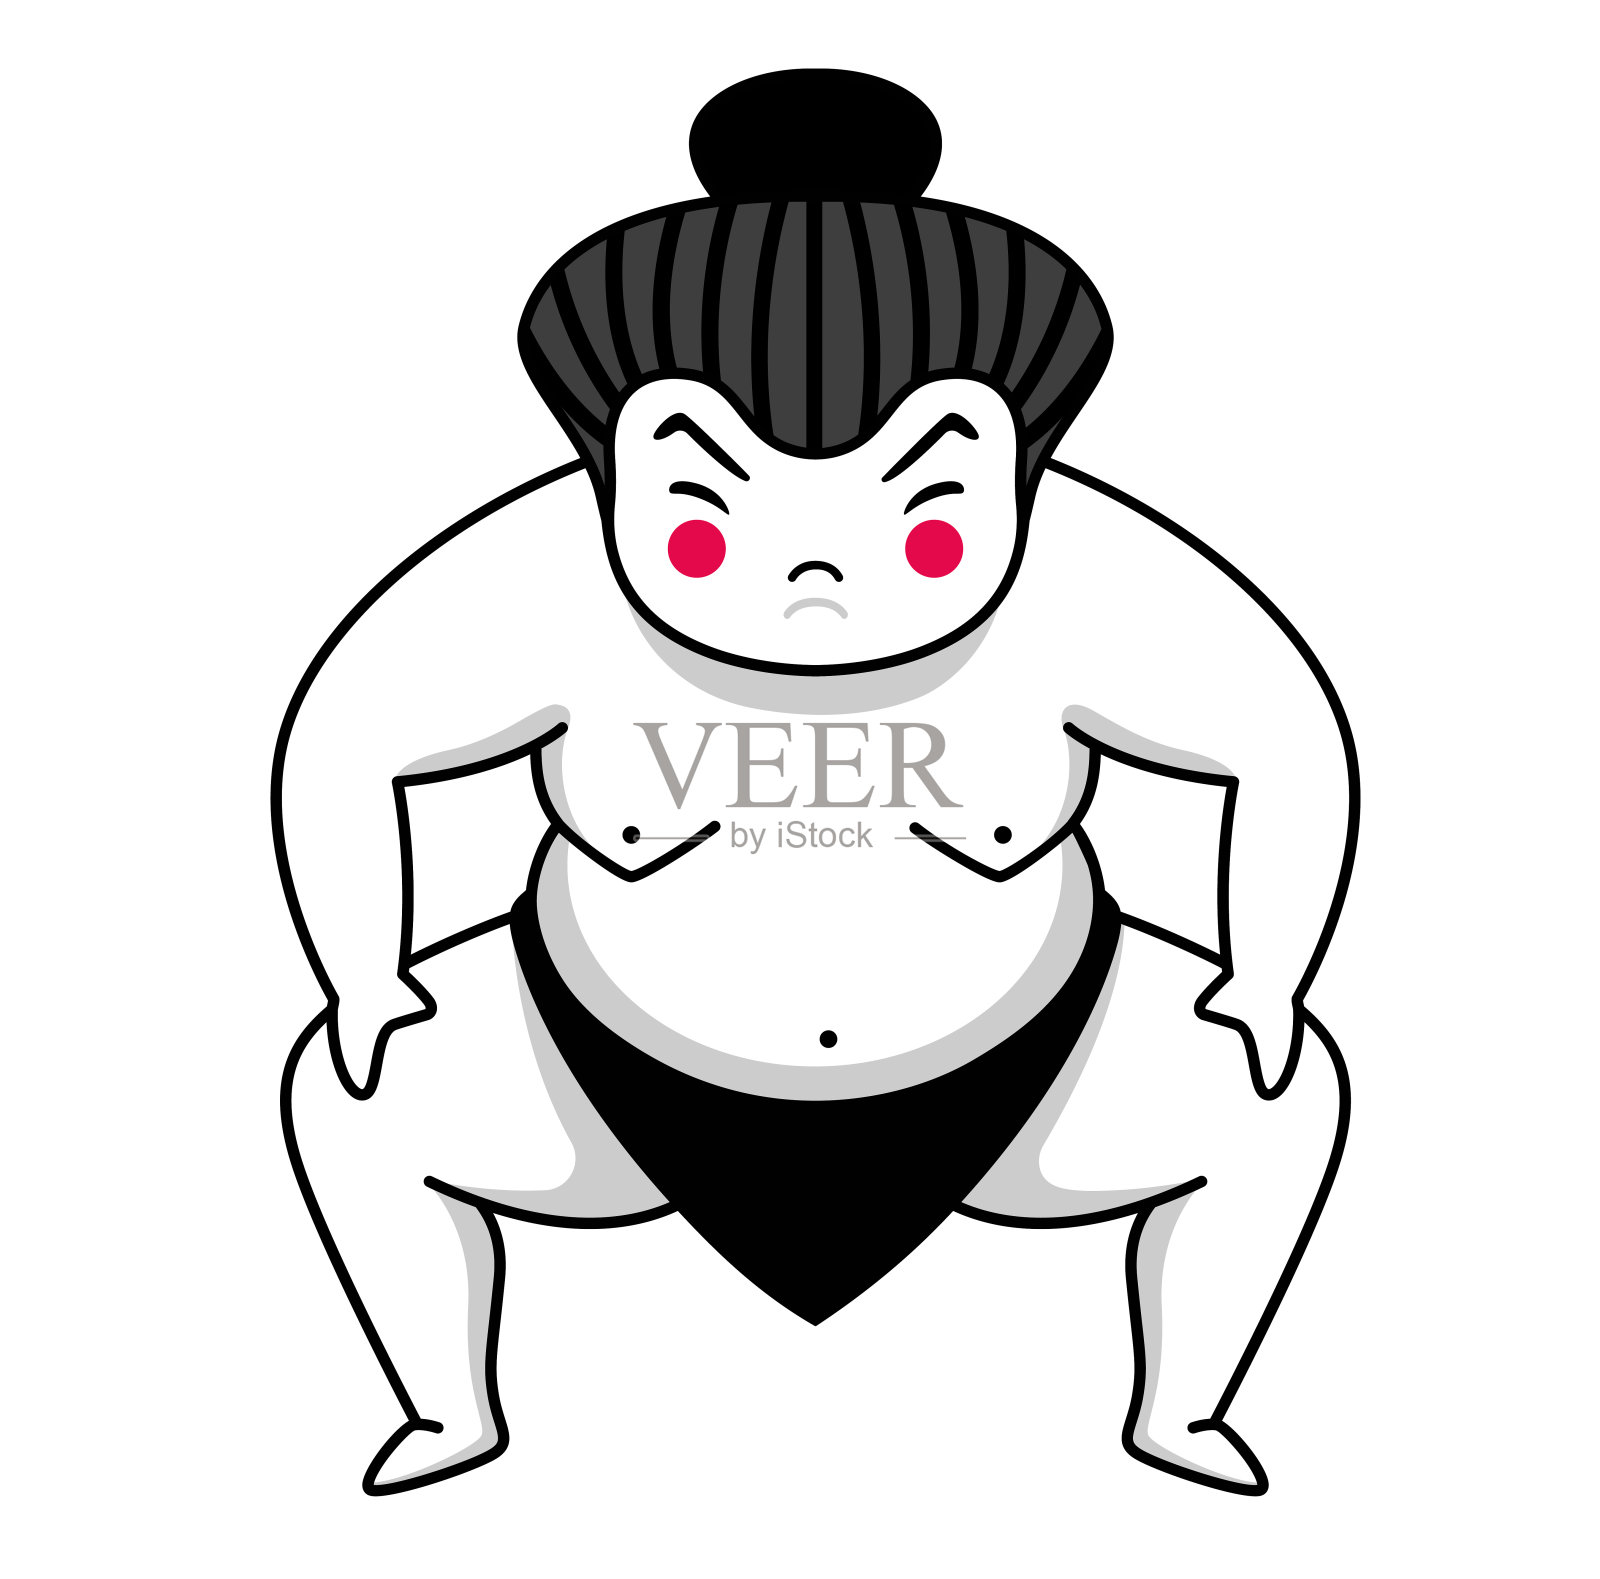 相扑选手。日本的卡通人物。设计元素图片